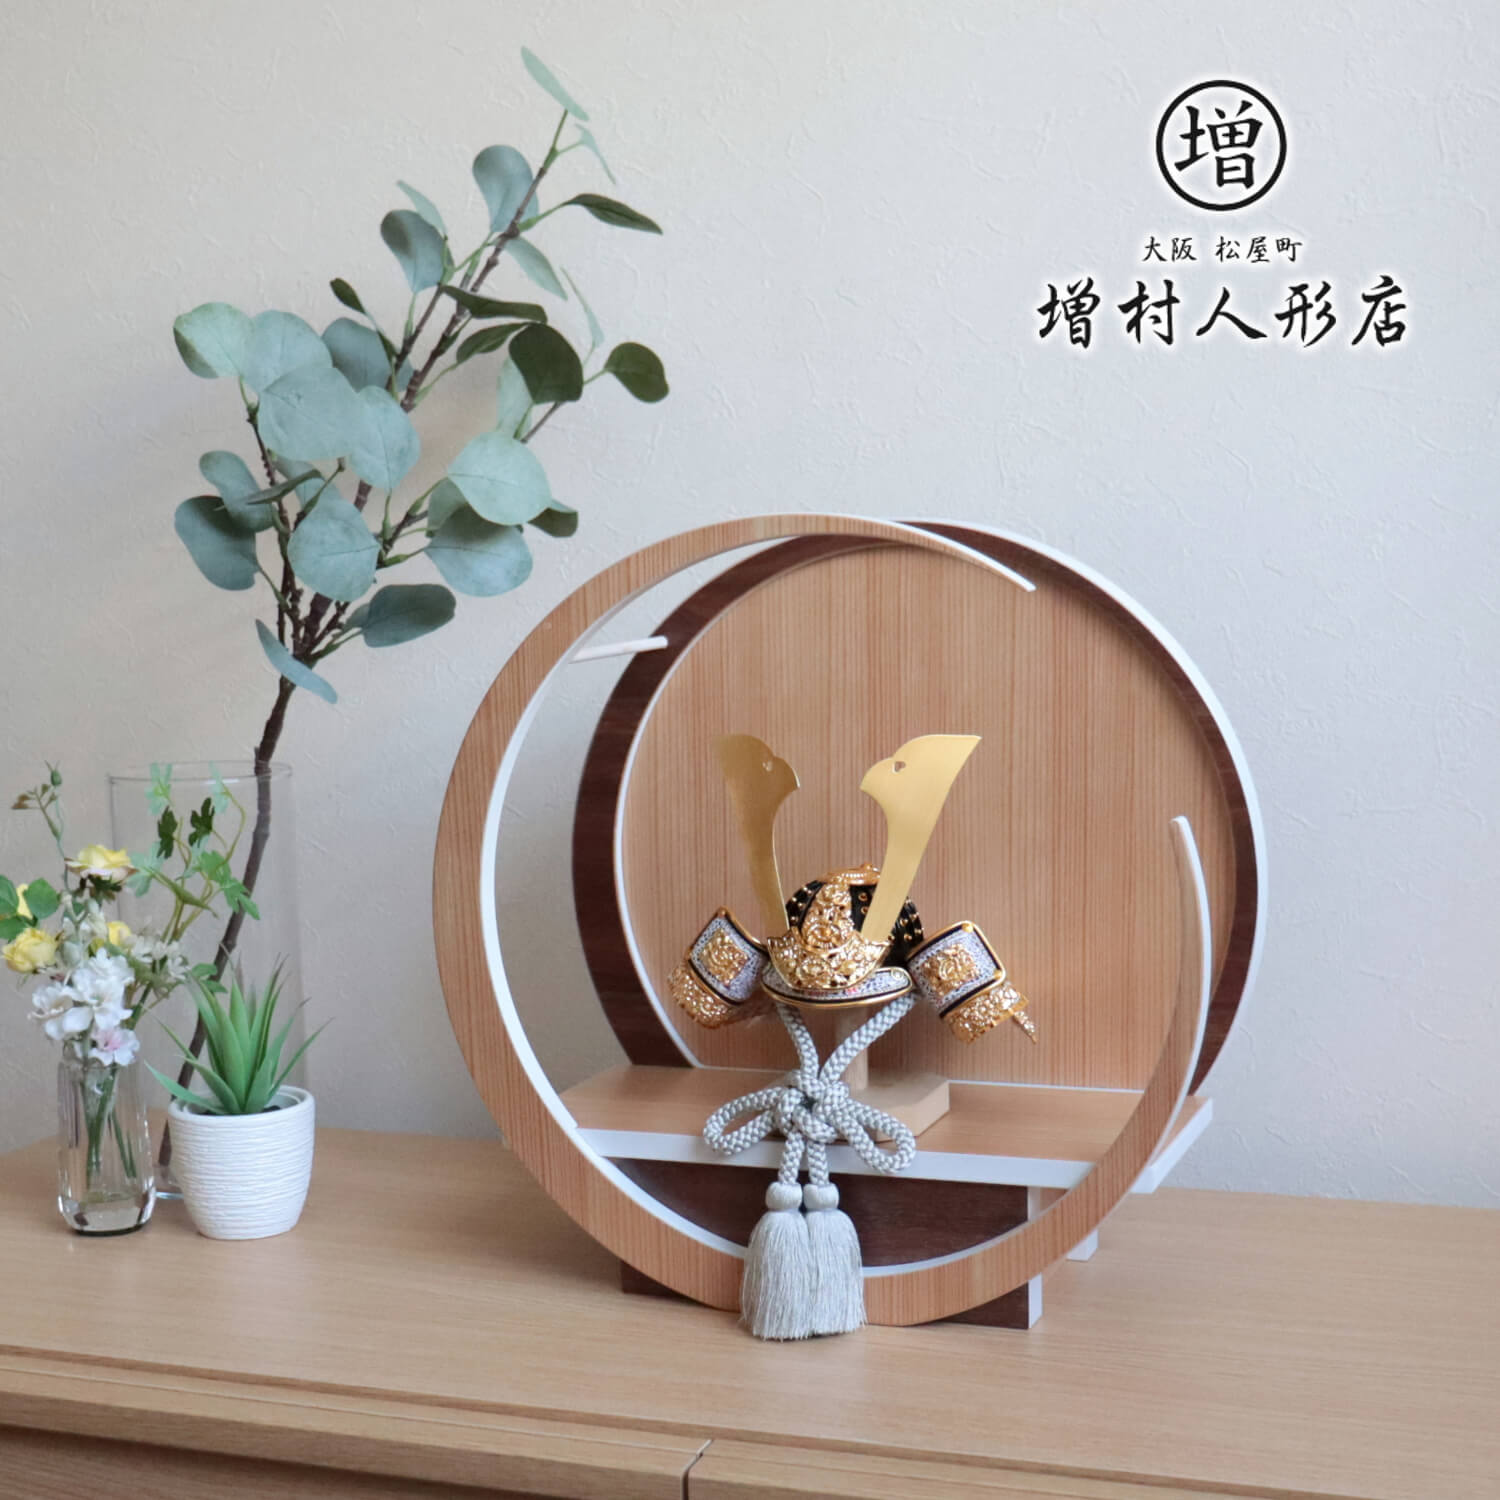 伝統工芸士 誠山作 淡黒水色兜 37A 月-tsuki- 日本製円形ナチュラル杉